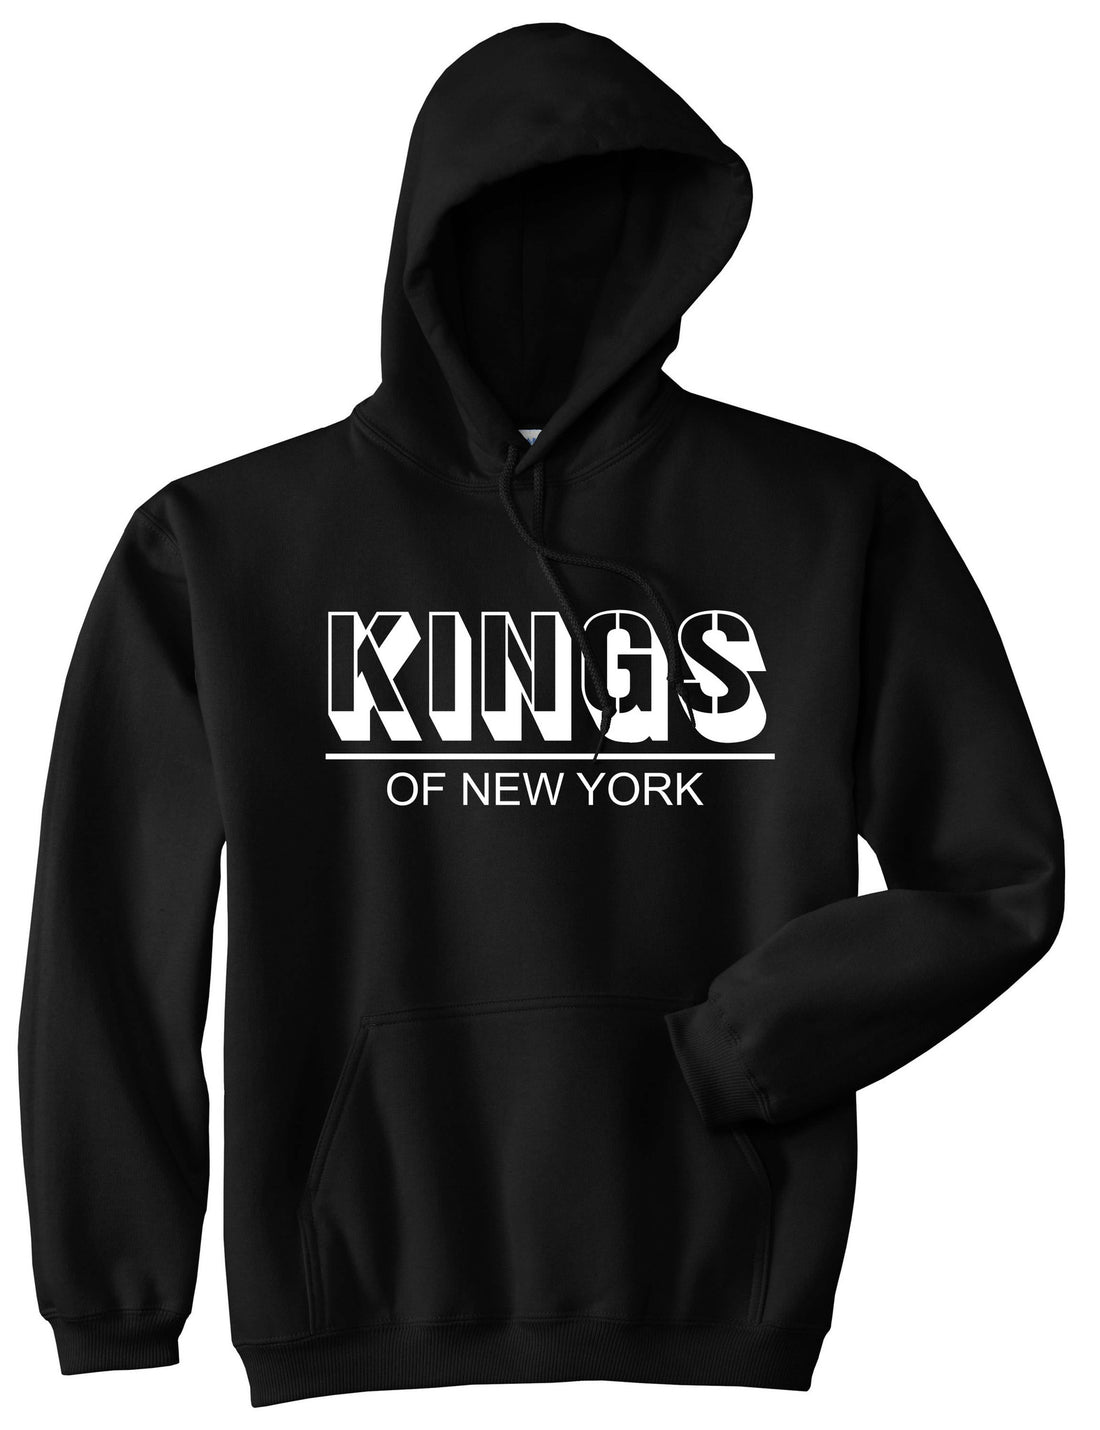 King Branded Block Letters Pullover Hoodie Hoody in Black by Kings Of NY